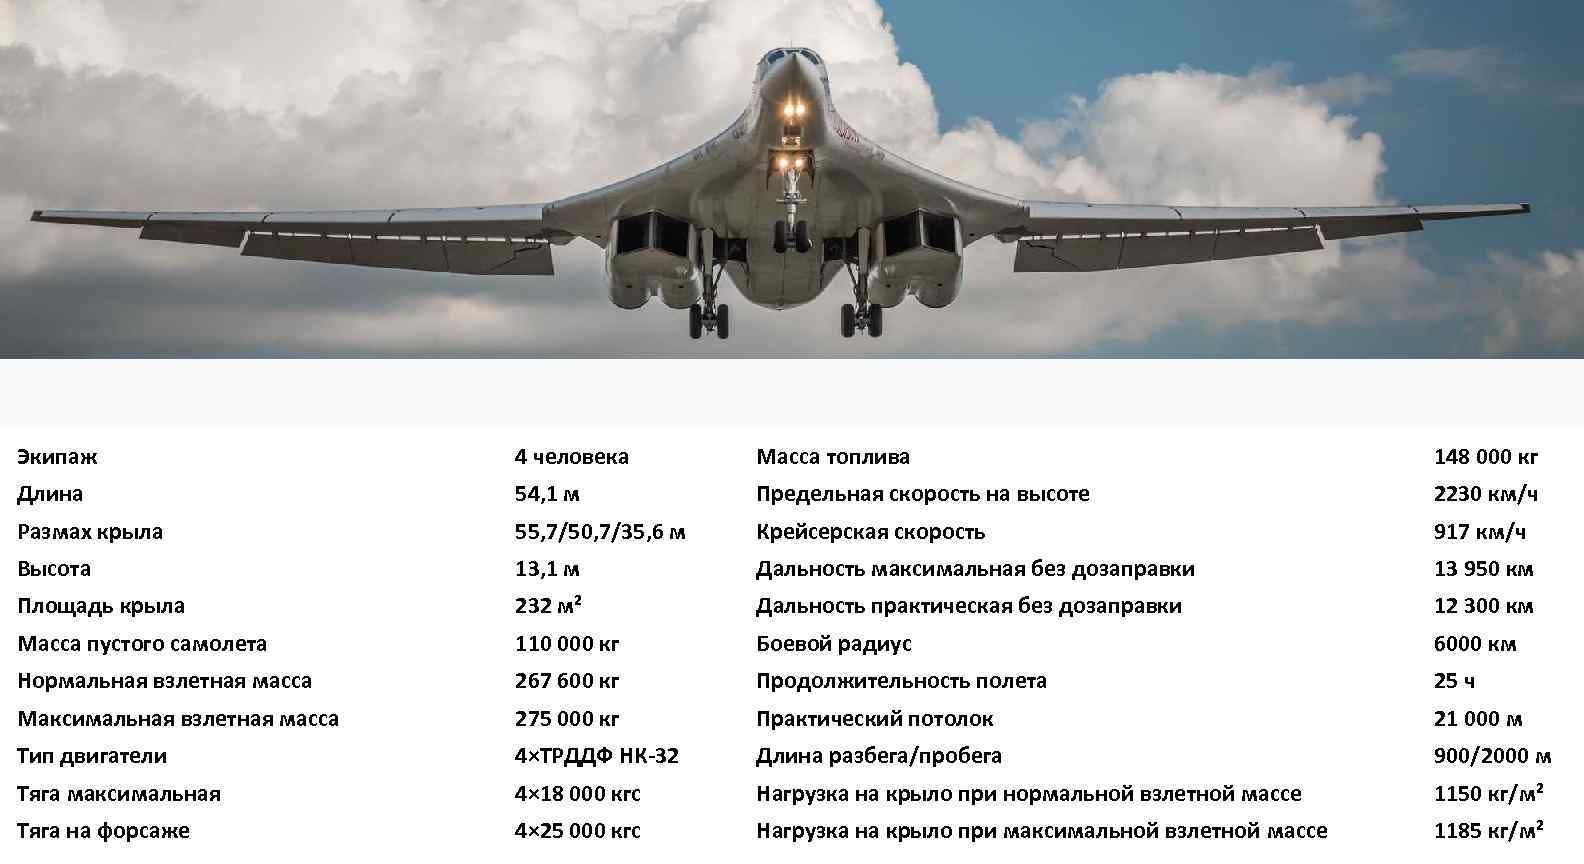 Бомбардировщики ту-160: ттх и история самолета «белый лебедь»